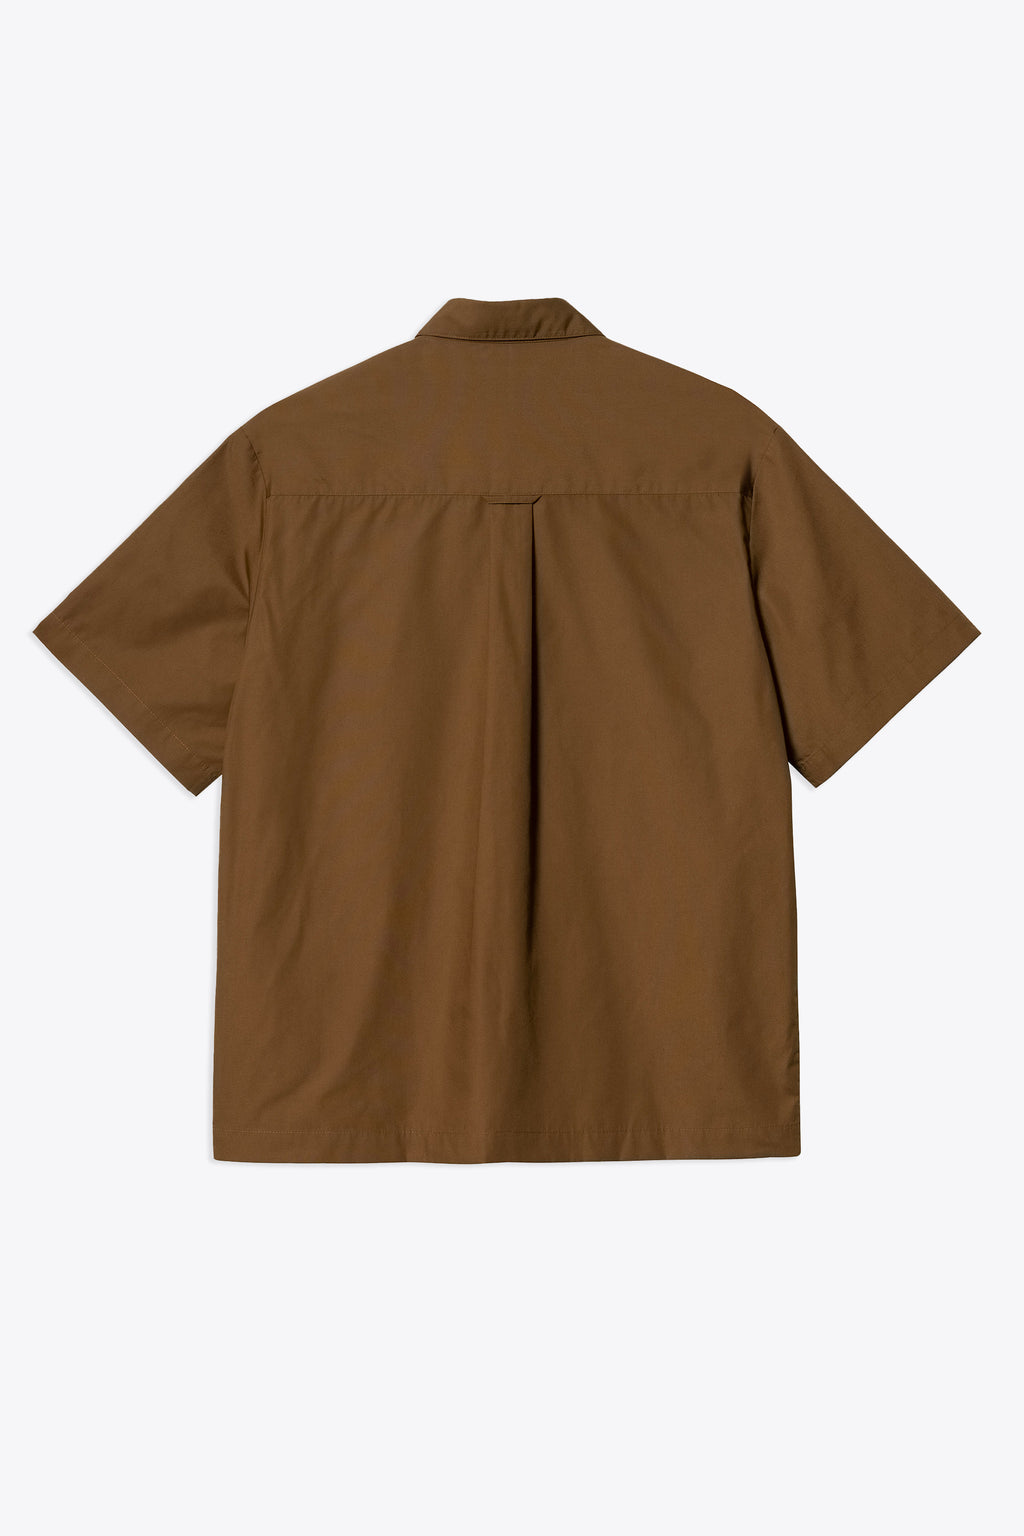 alt-image__Camicia-in-cotone-marrone-con-maniche-corte---S/S-Craft-Shirt